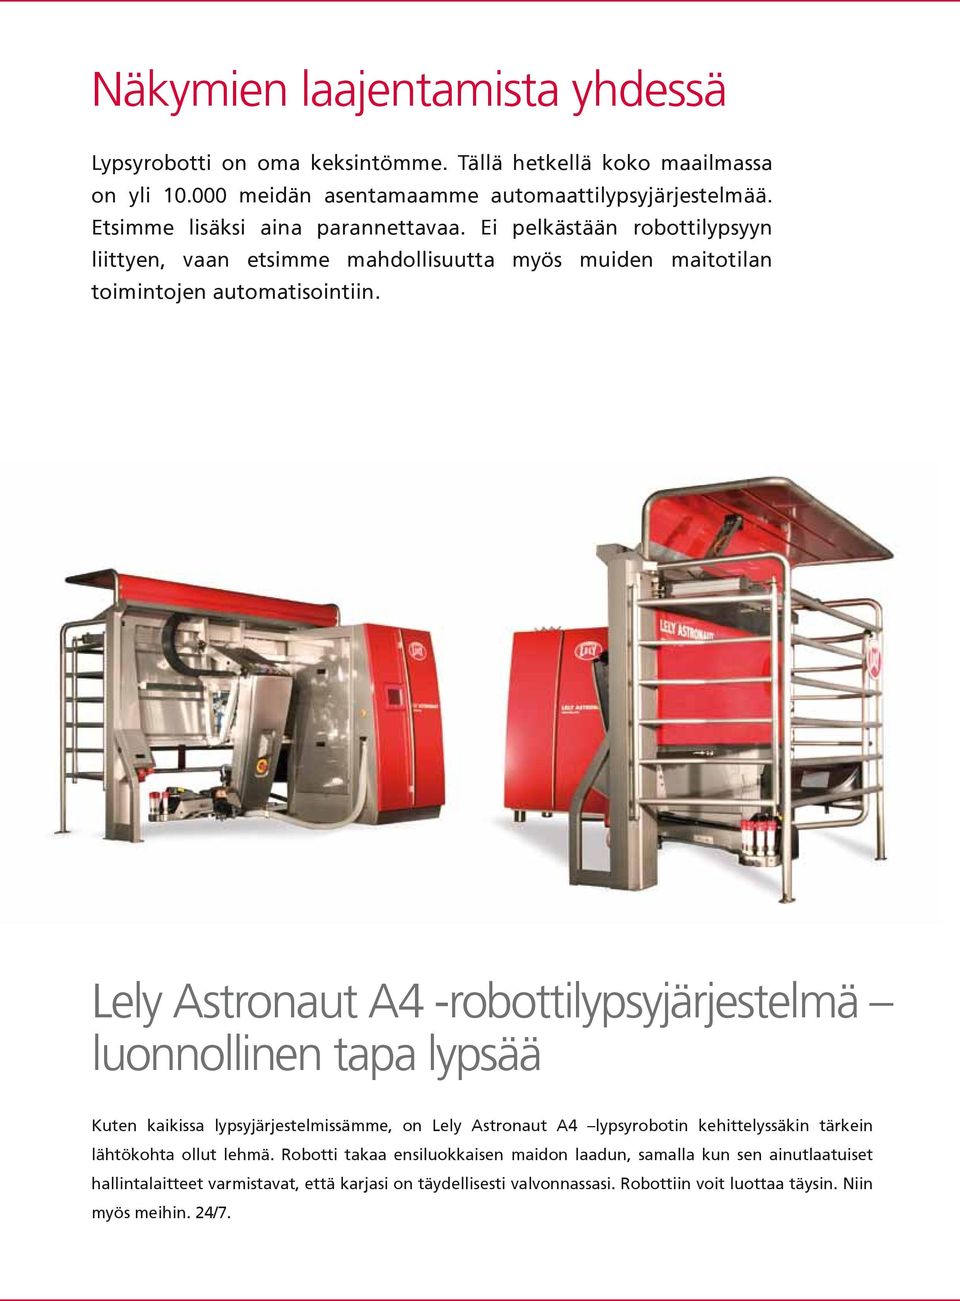 Lely Astronaut A4 -robottilypsyjärjestelmä luonnollinen tapa lypsää Kuten kaikissa lypsyjärjestelmissämme, on Lely Astronaut A4 lypsyrobotin kehittelyssäkin tärkein lähtökohta